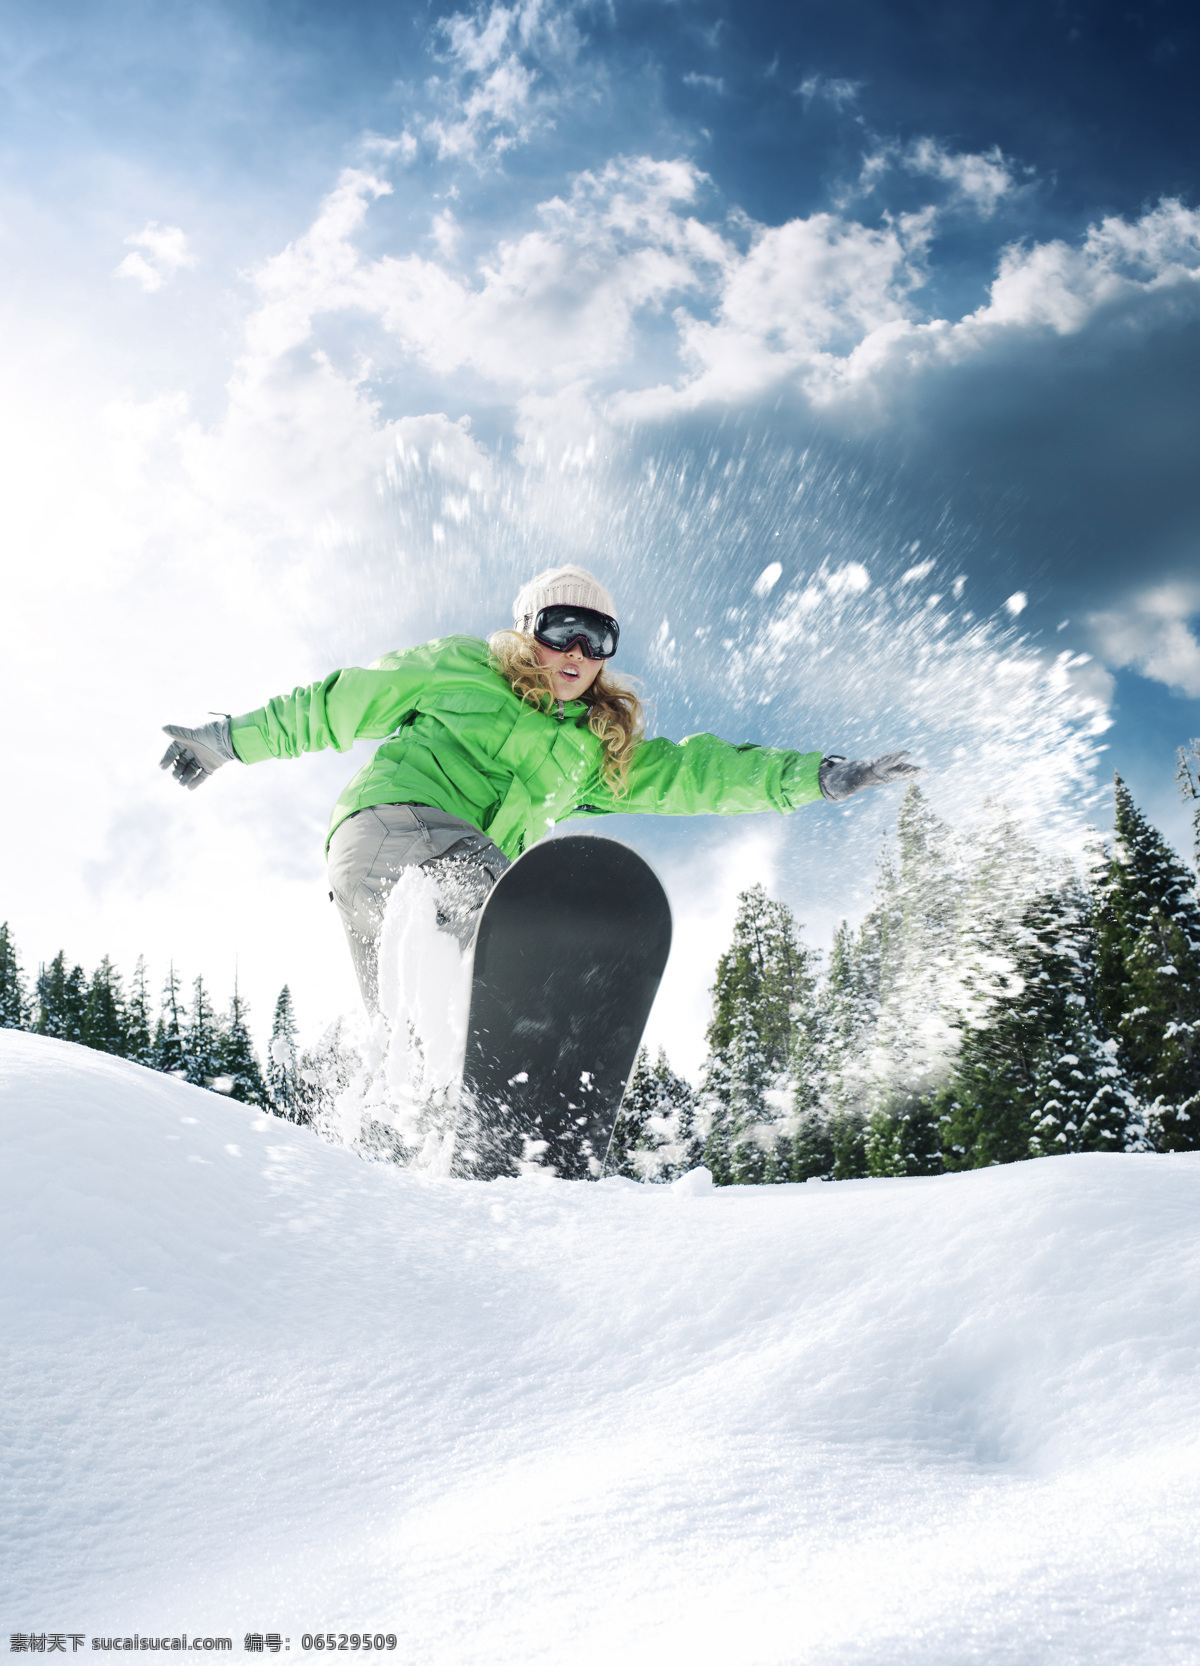 滑雪 人物 雪地 运动员 运动 女人 女性 生活人物 人物摄影 人物图库 滑雪图片 生活百科